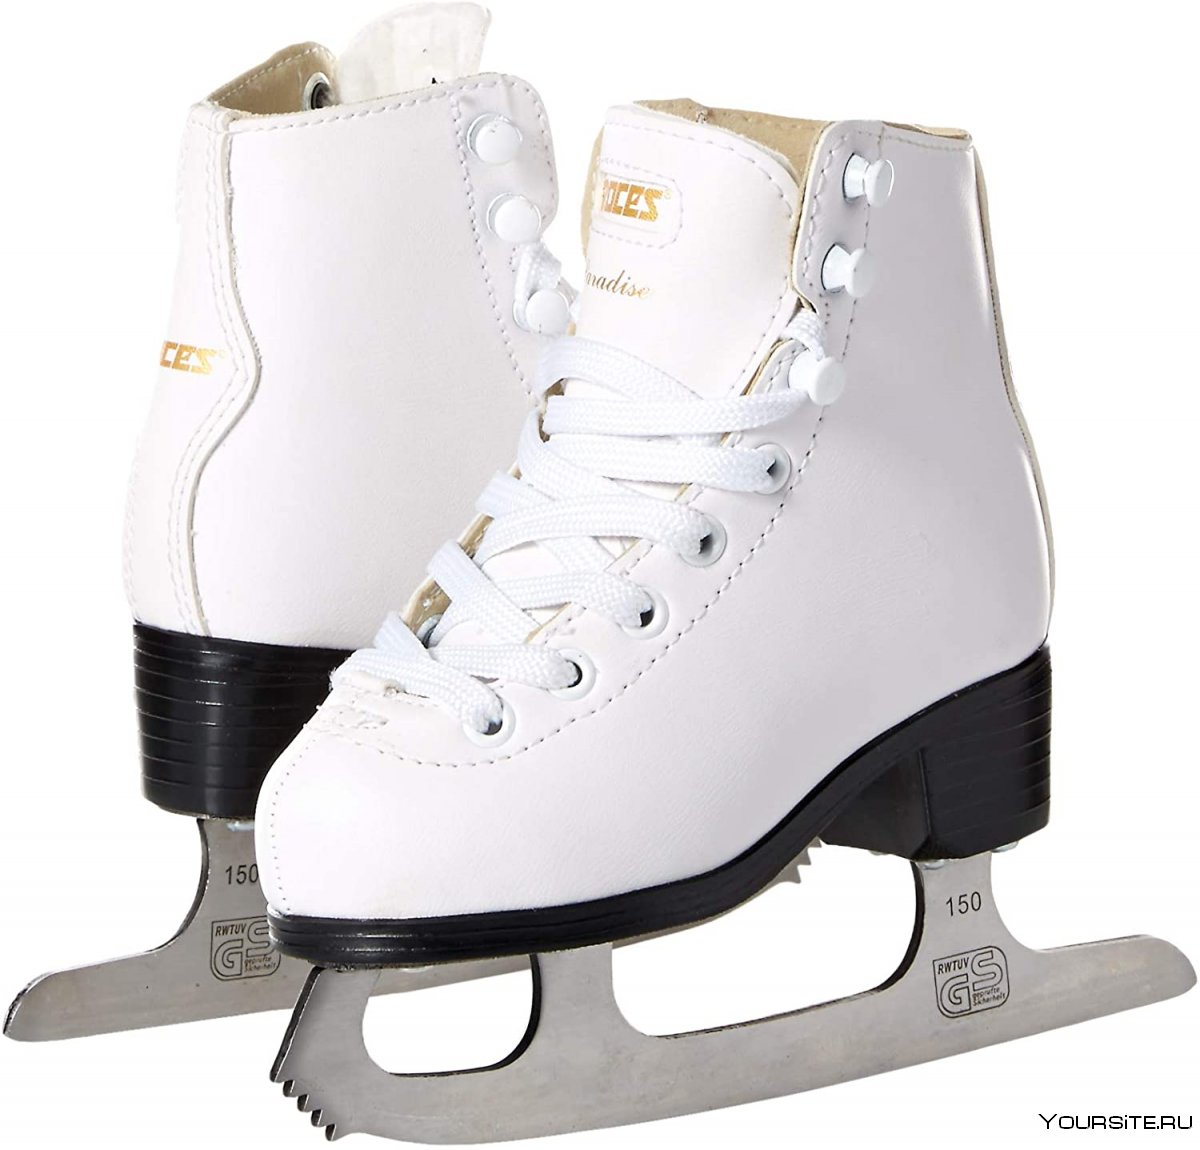 Ice Skates for girls